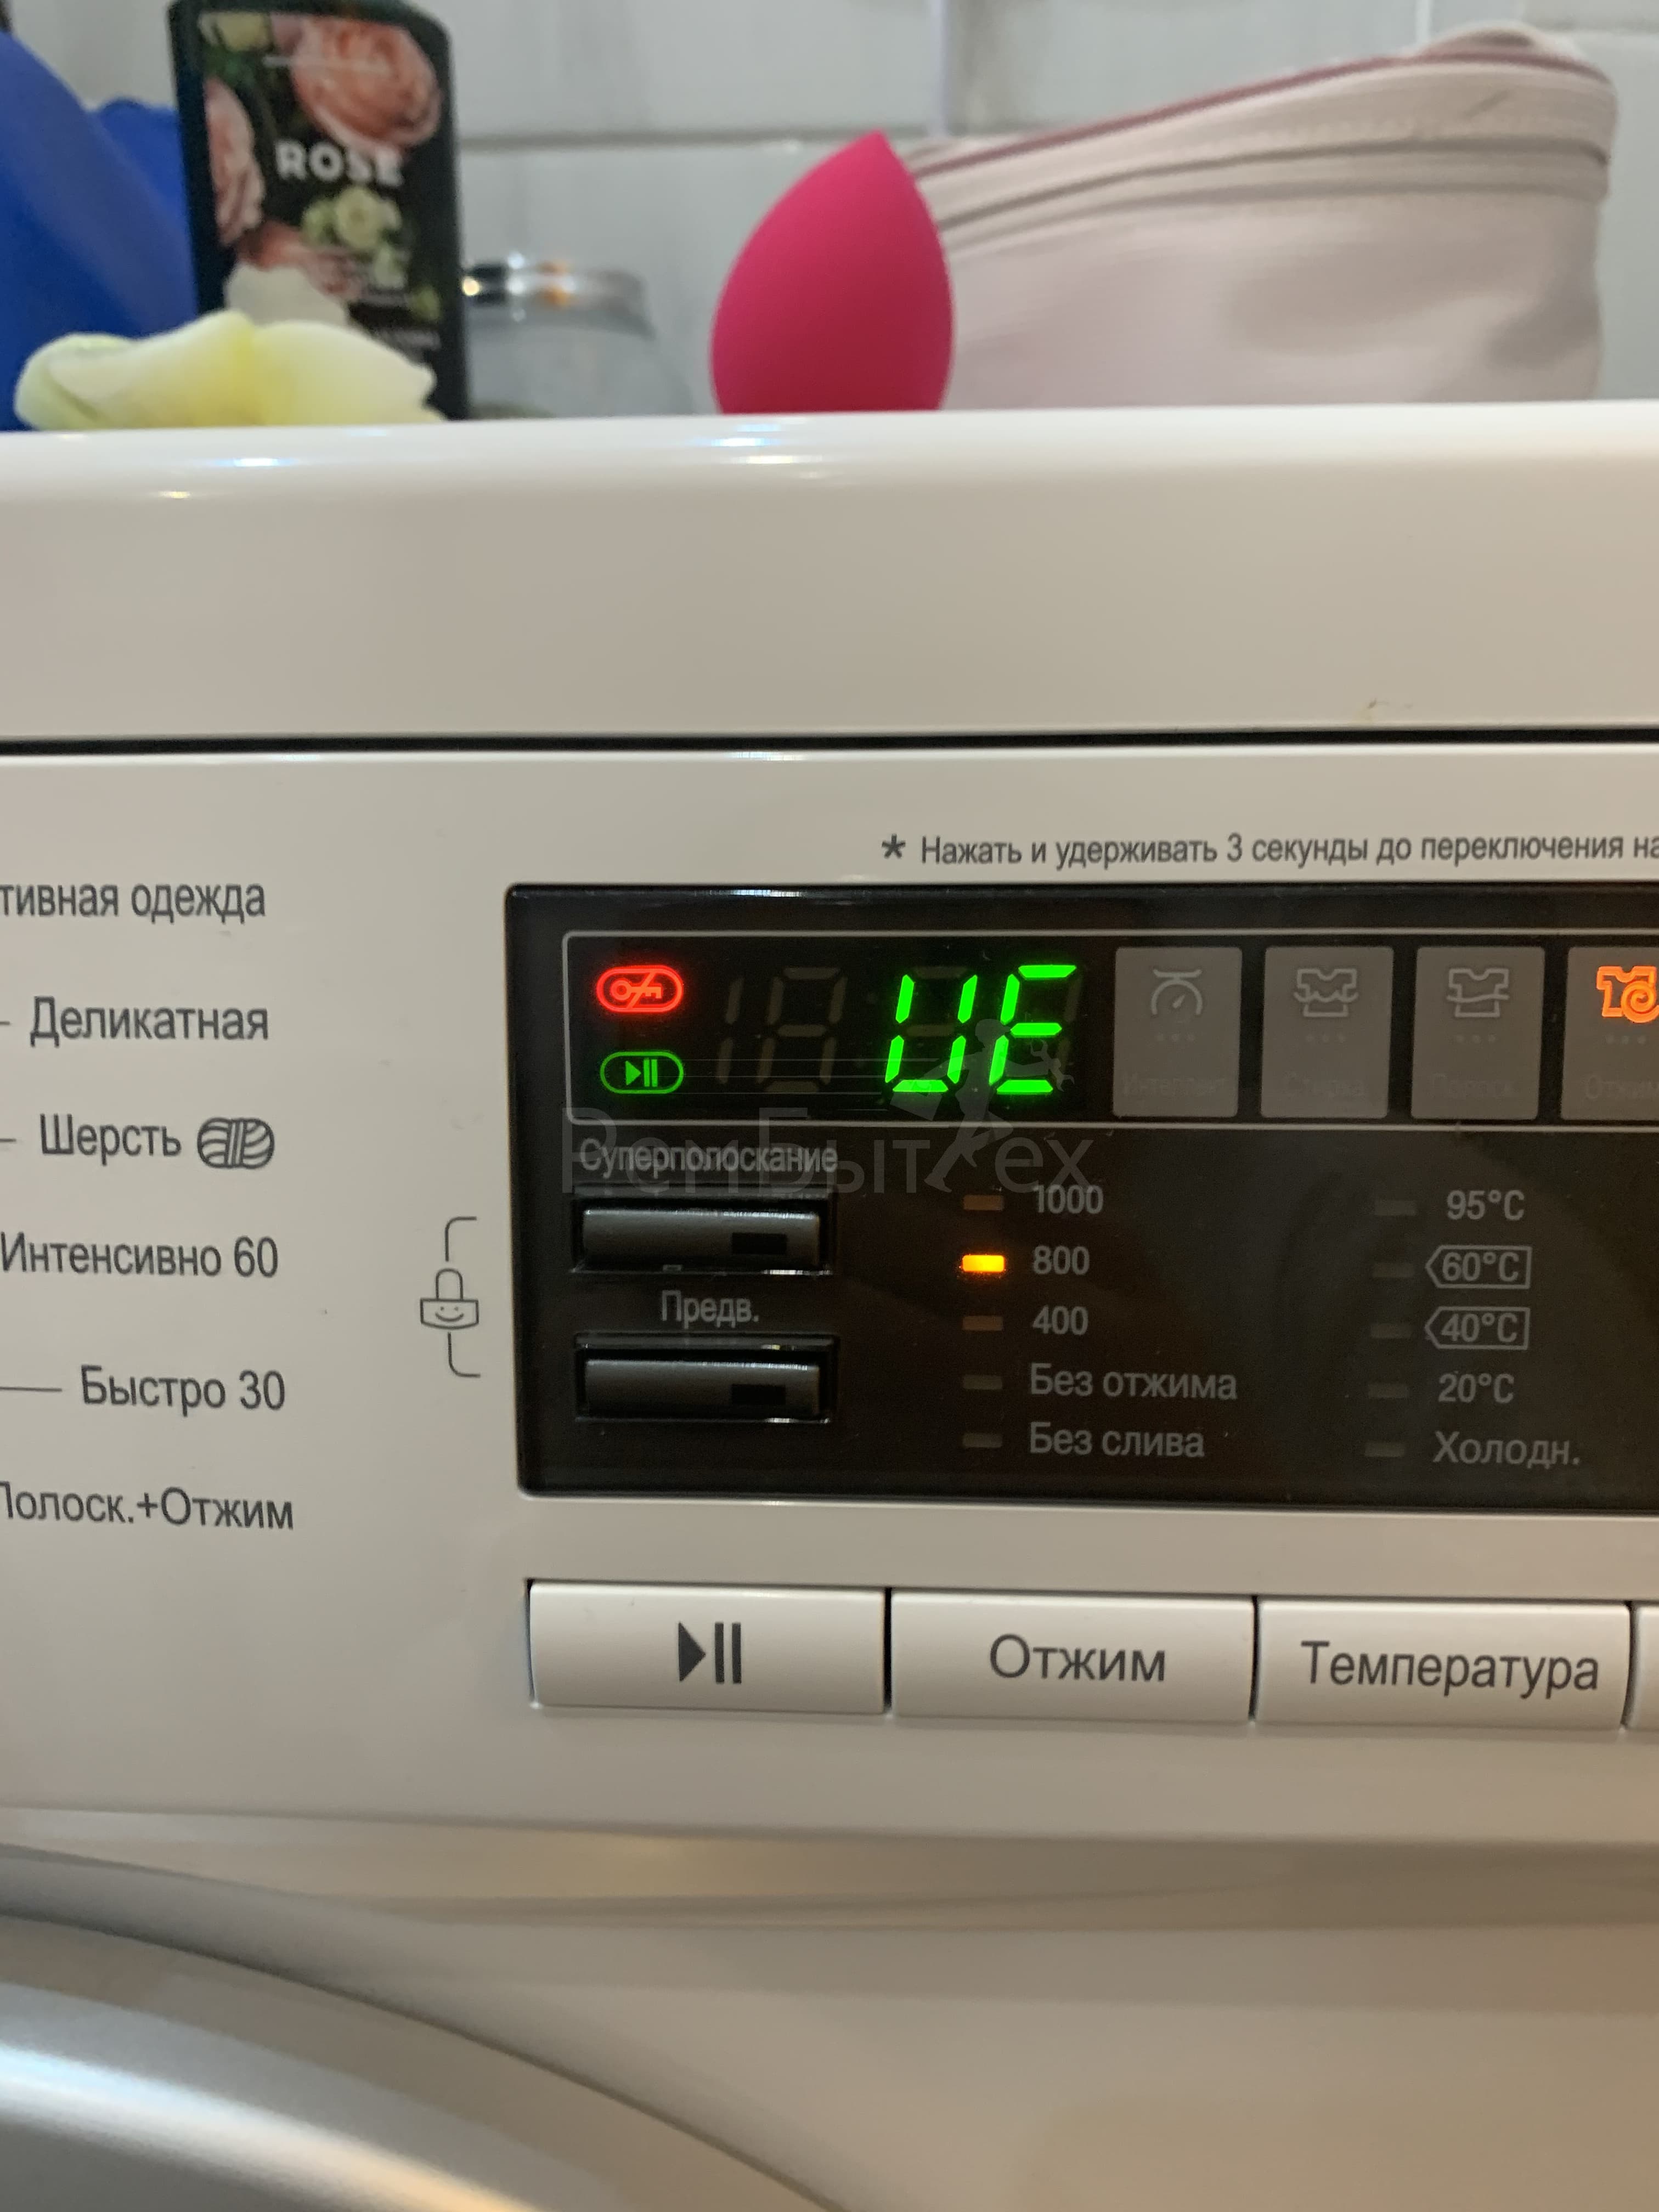 Причины сбоя программы в стиральной машине.